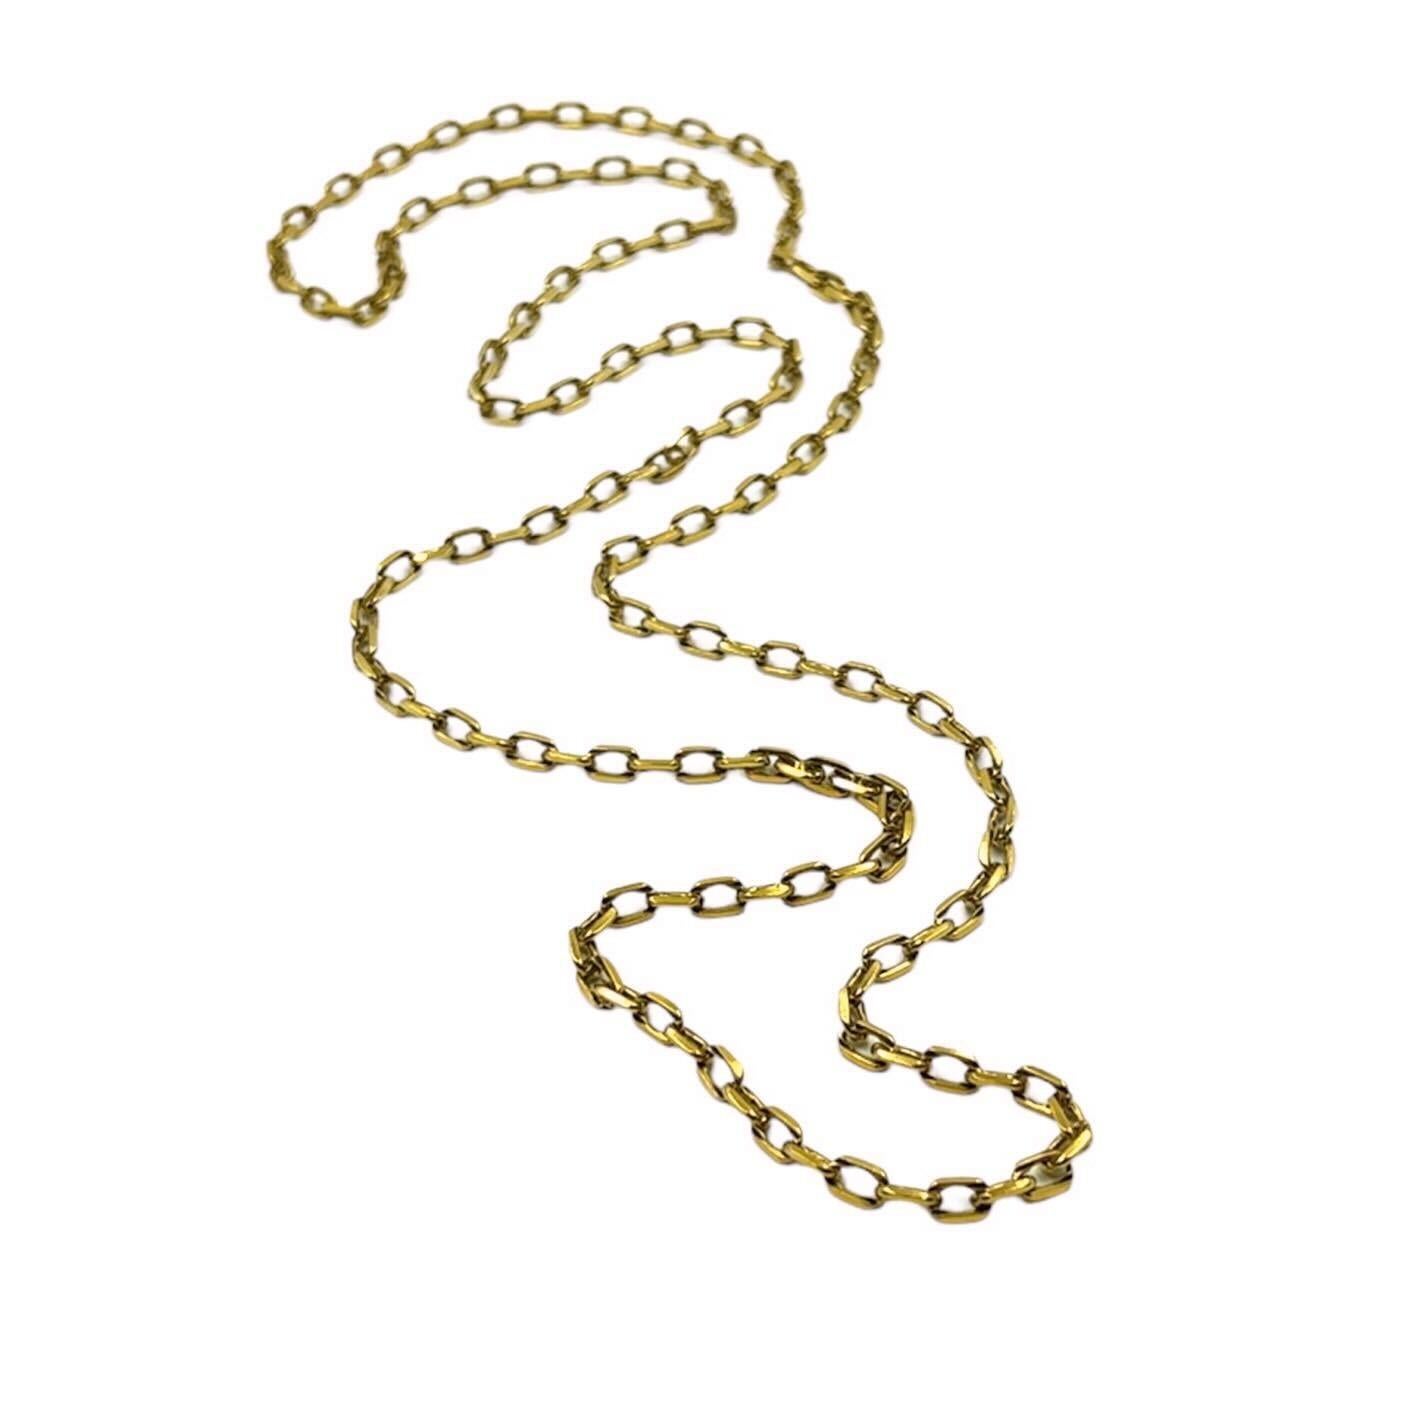 Women's or Men's 18 Karat Yellow Gold Link Necklace